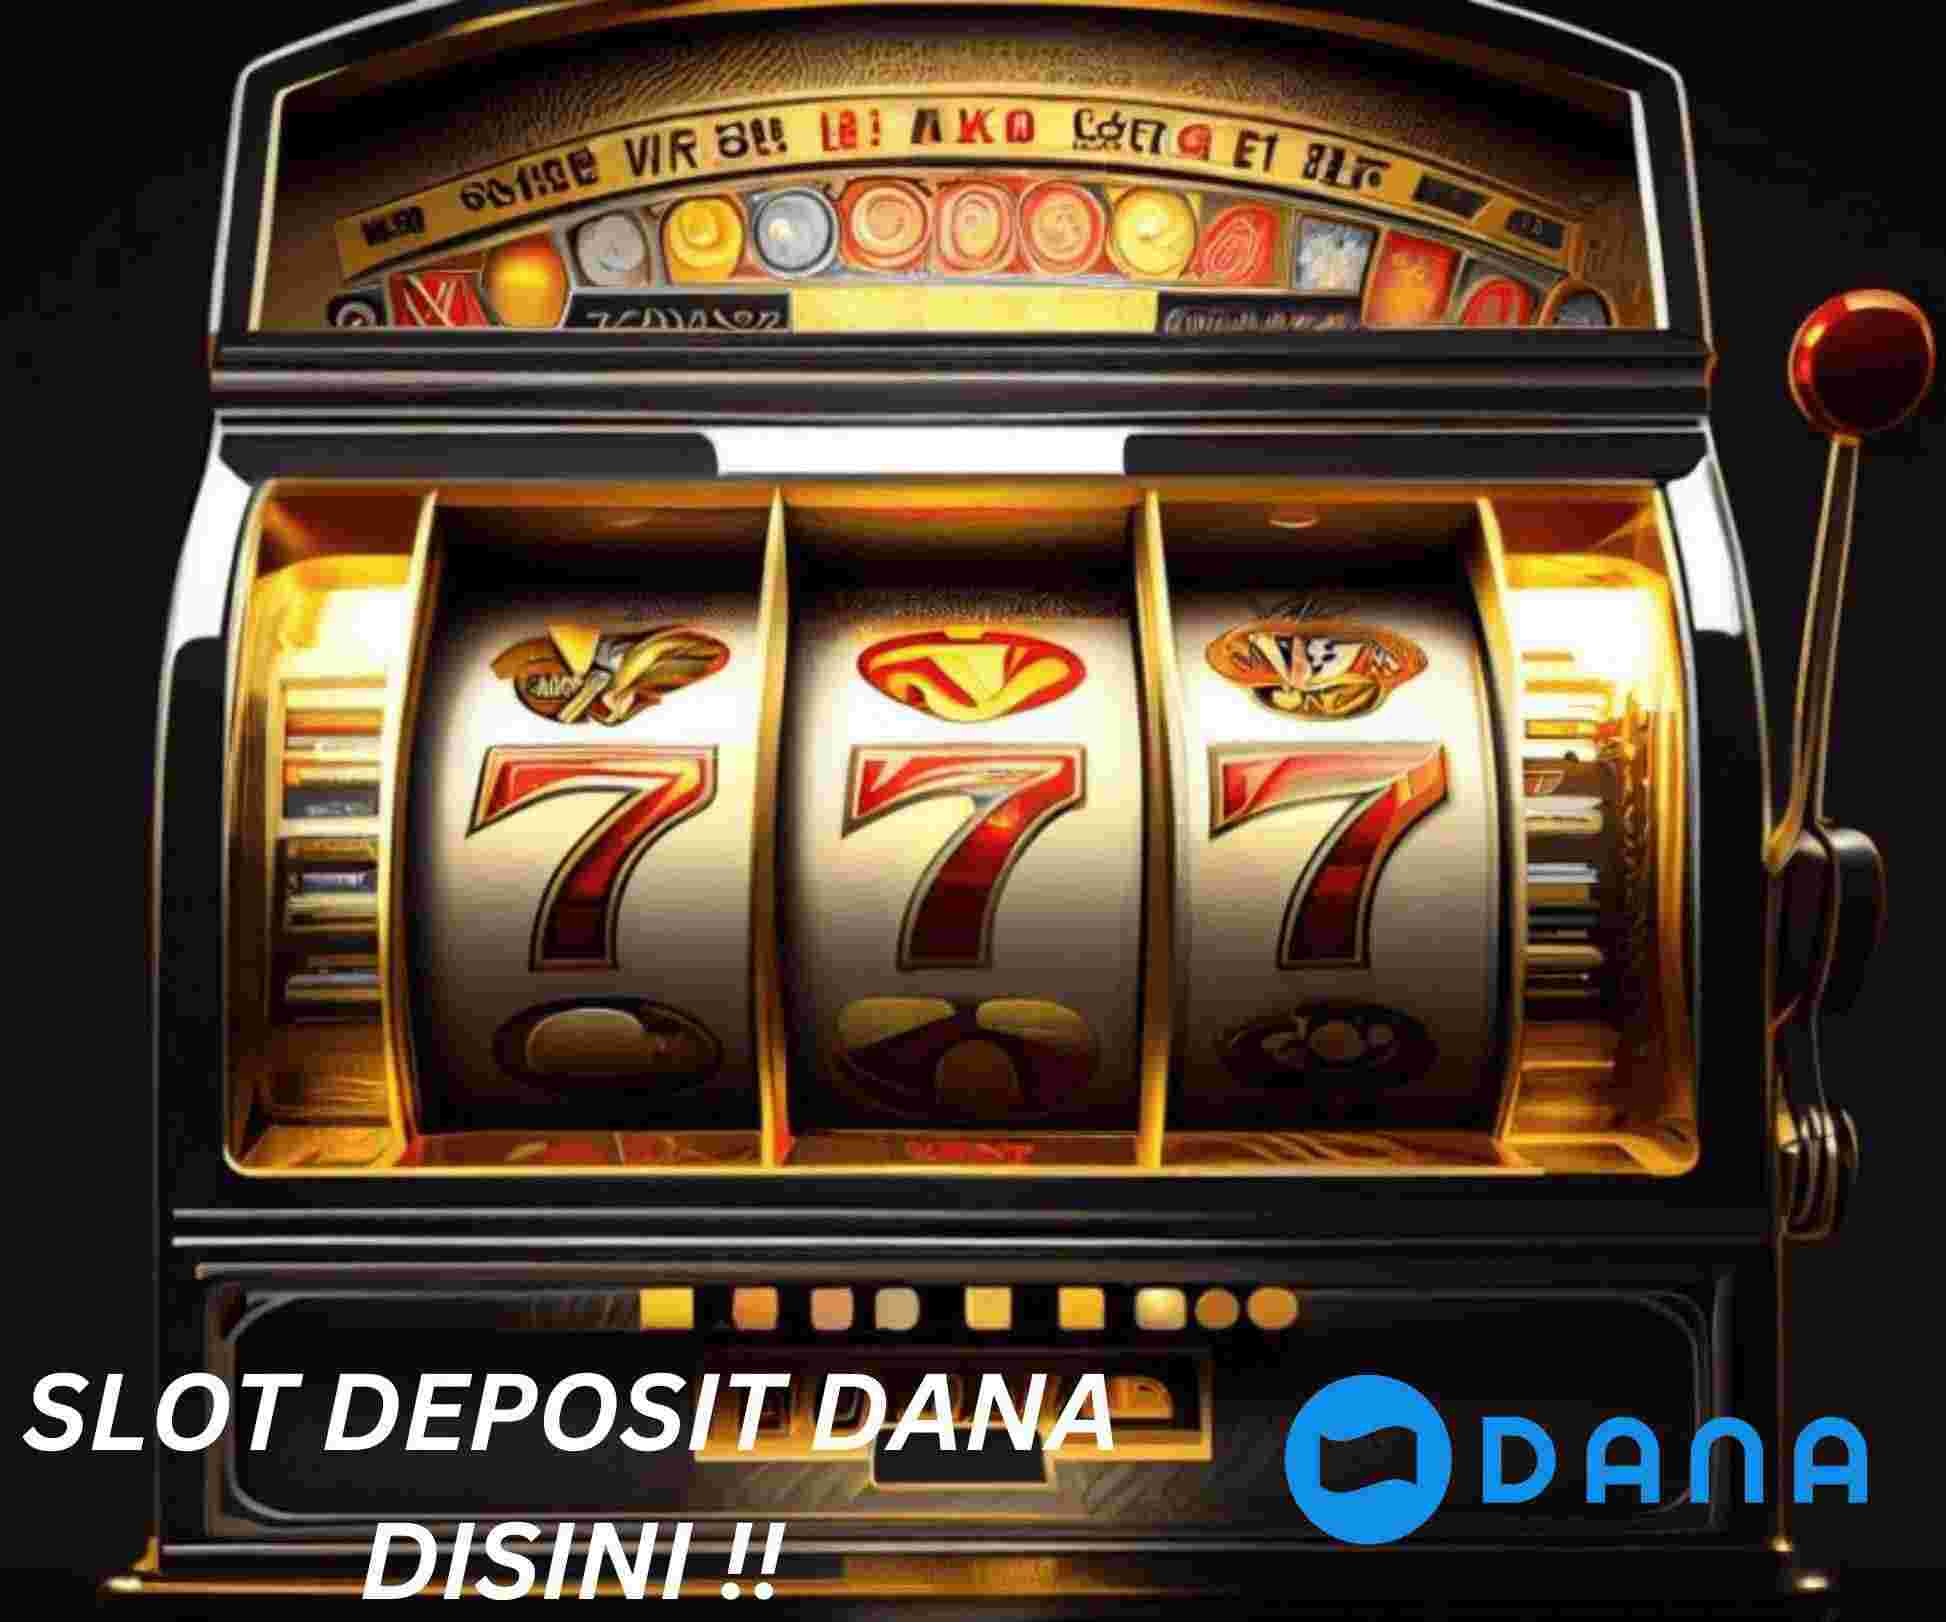 Slot dana gacor are fascinating slot gambling sites